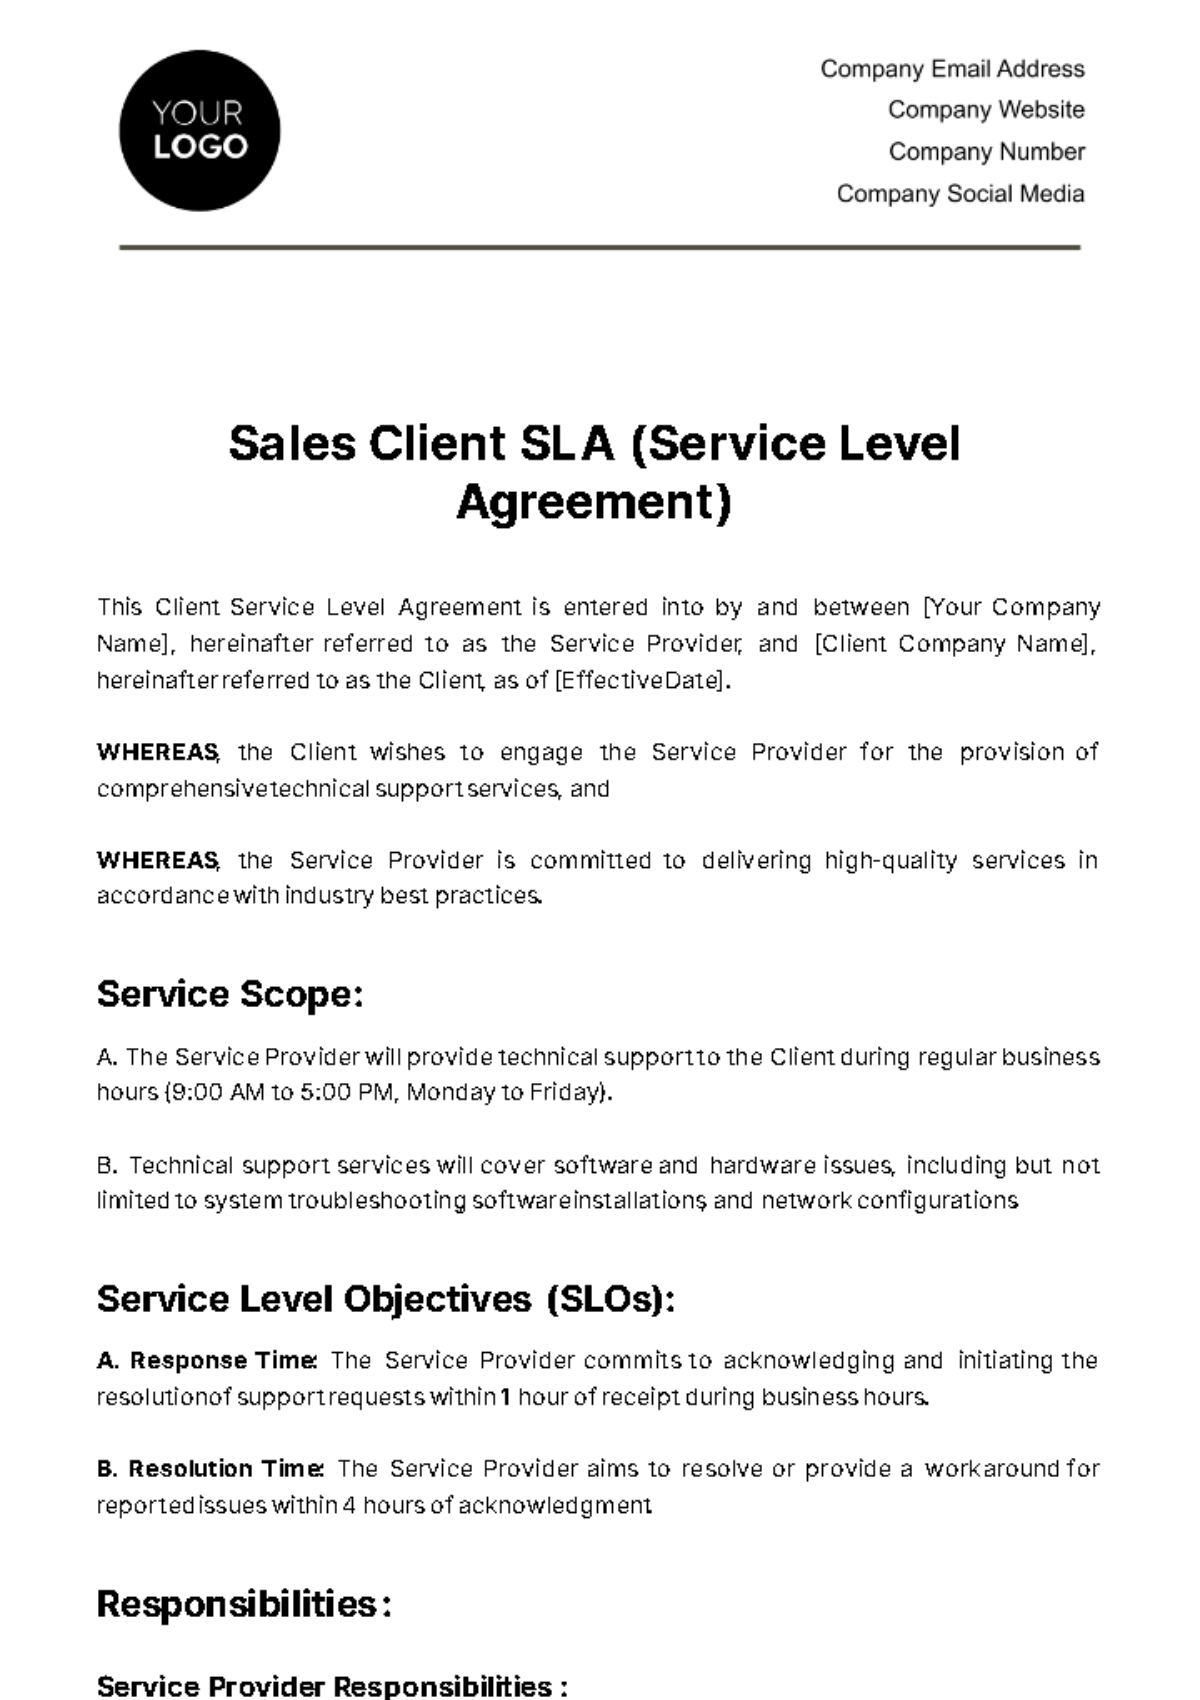 Sales Client SLA (Service Level Agreement) Template